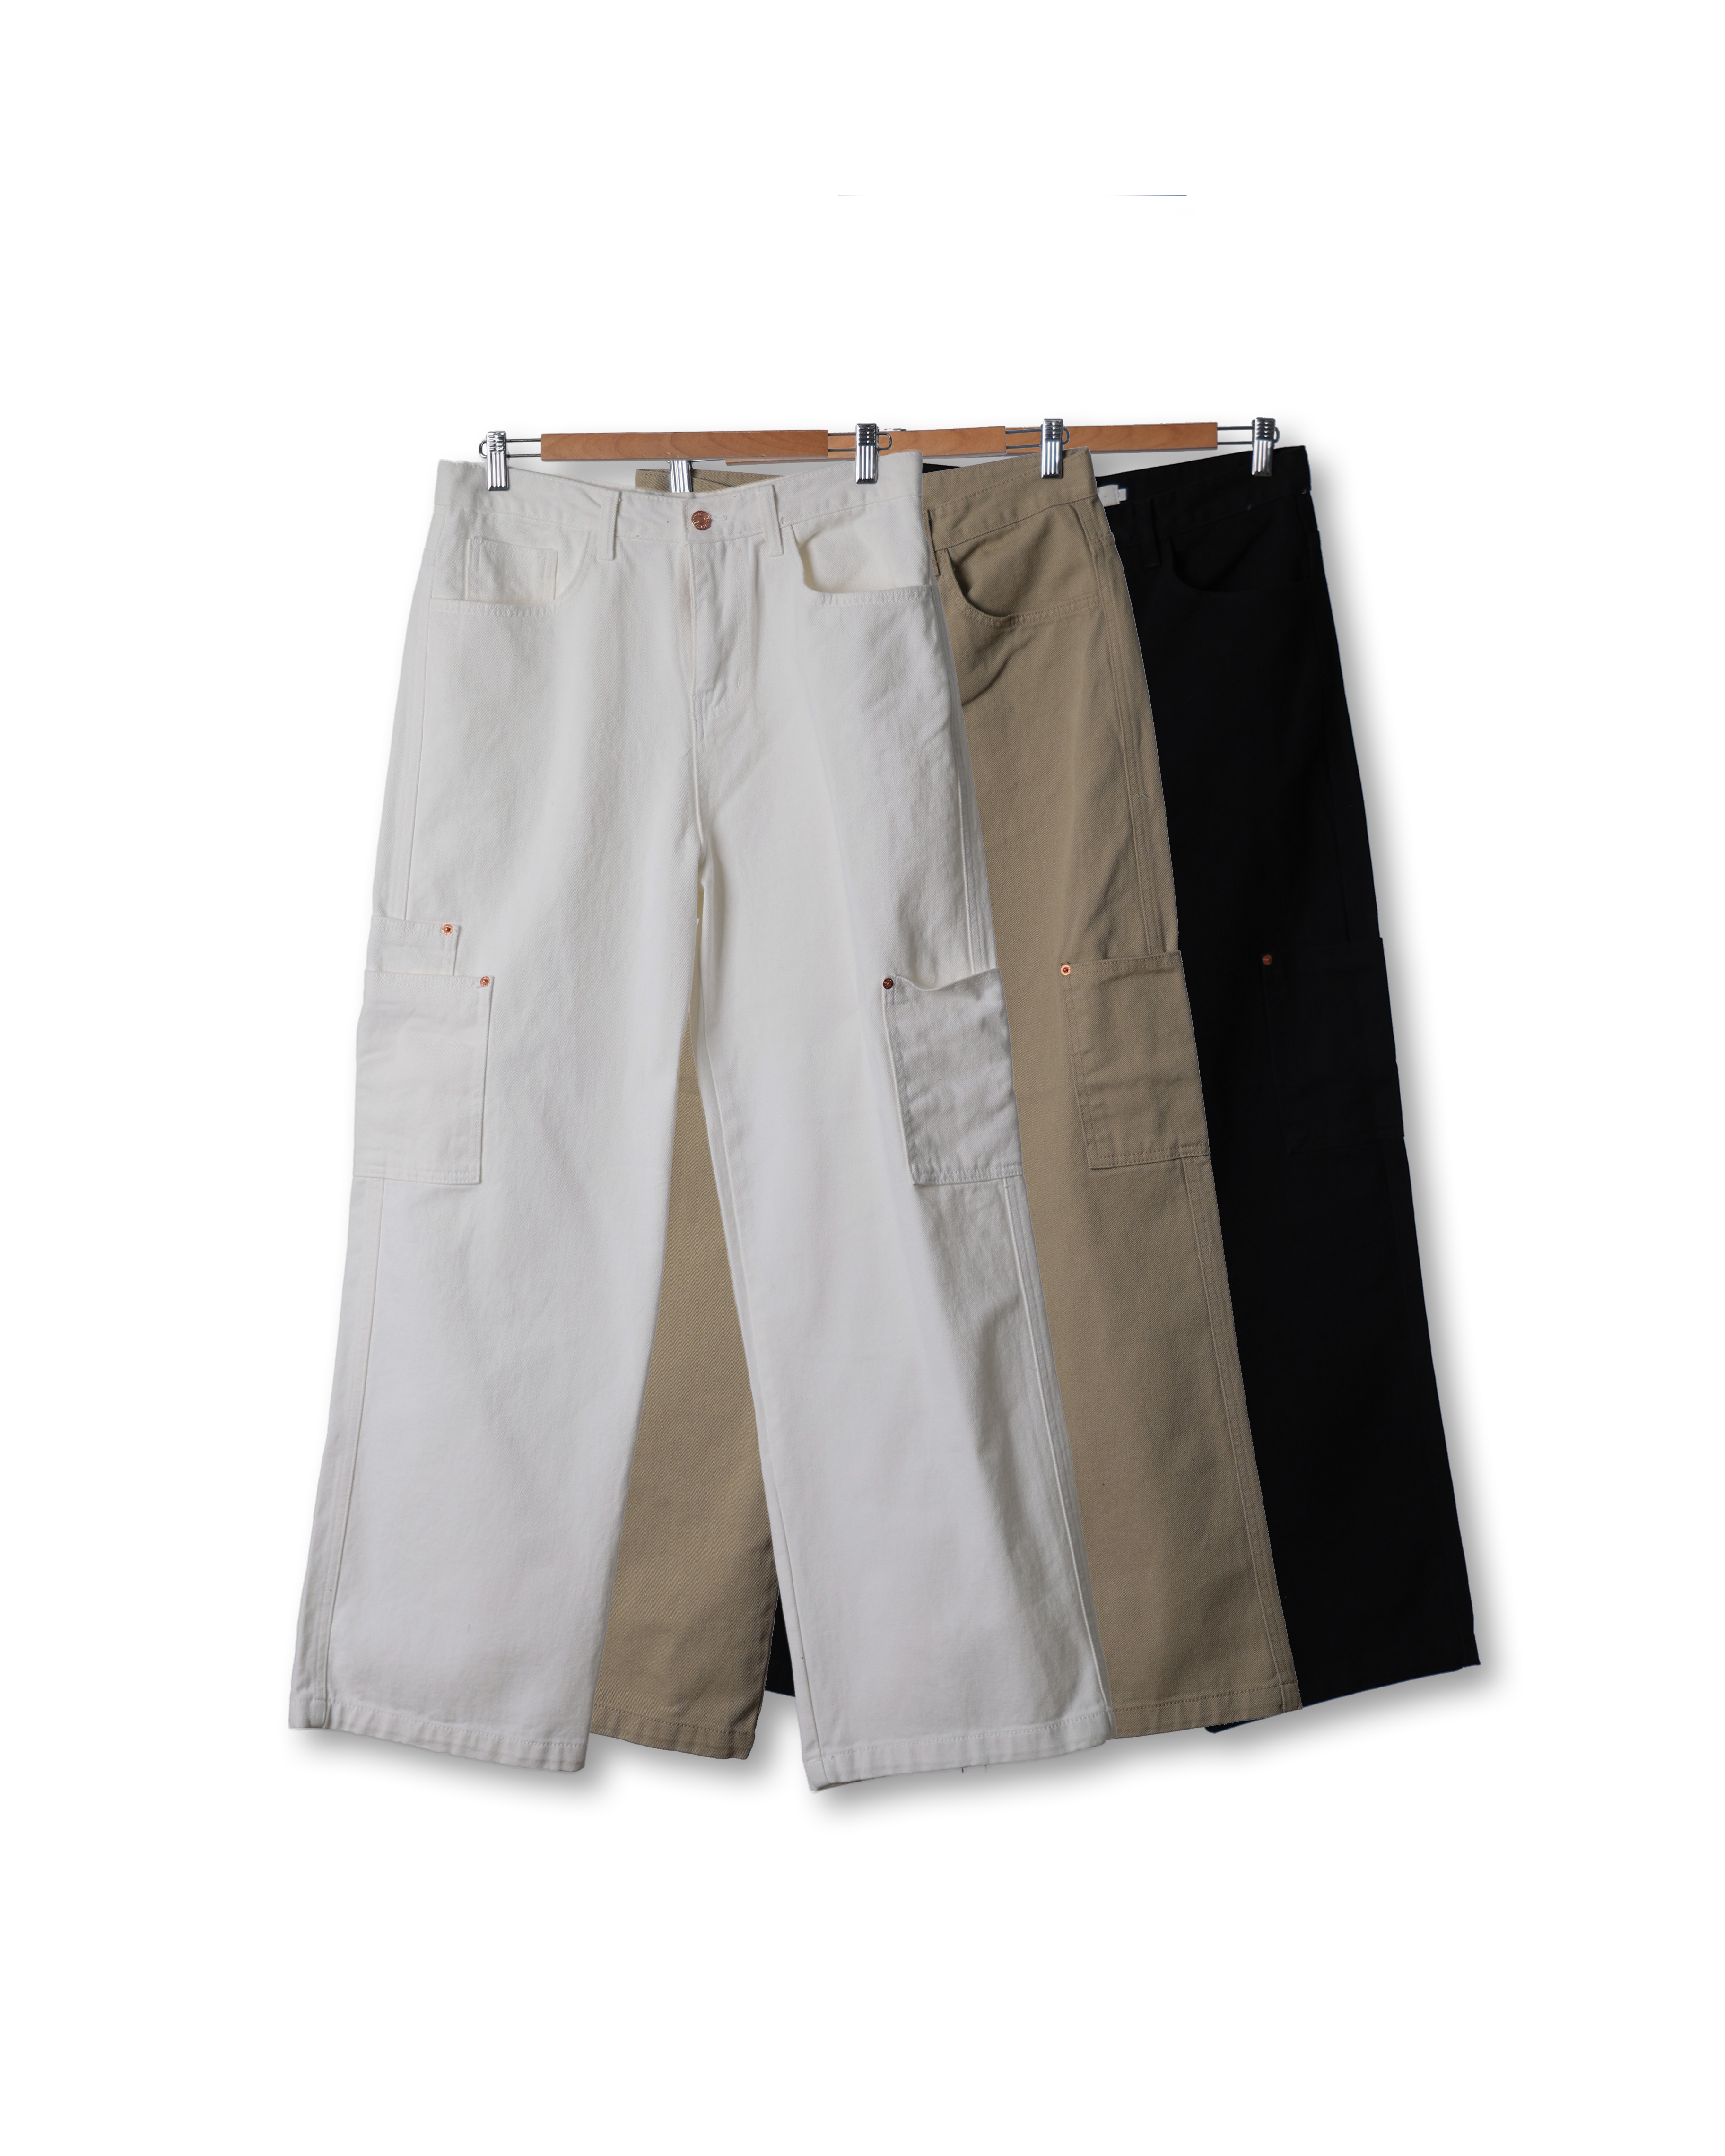 ANSWR Rivet Pocket Work Cotton Pants (Black/Olive Beige/Ivory)